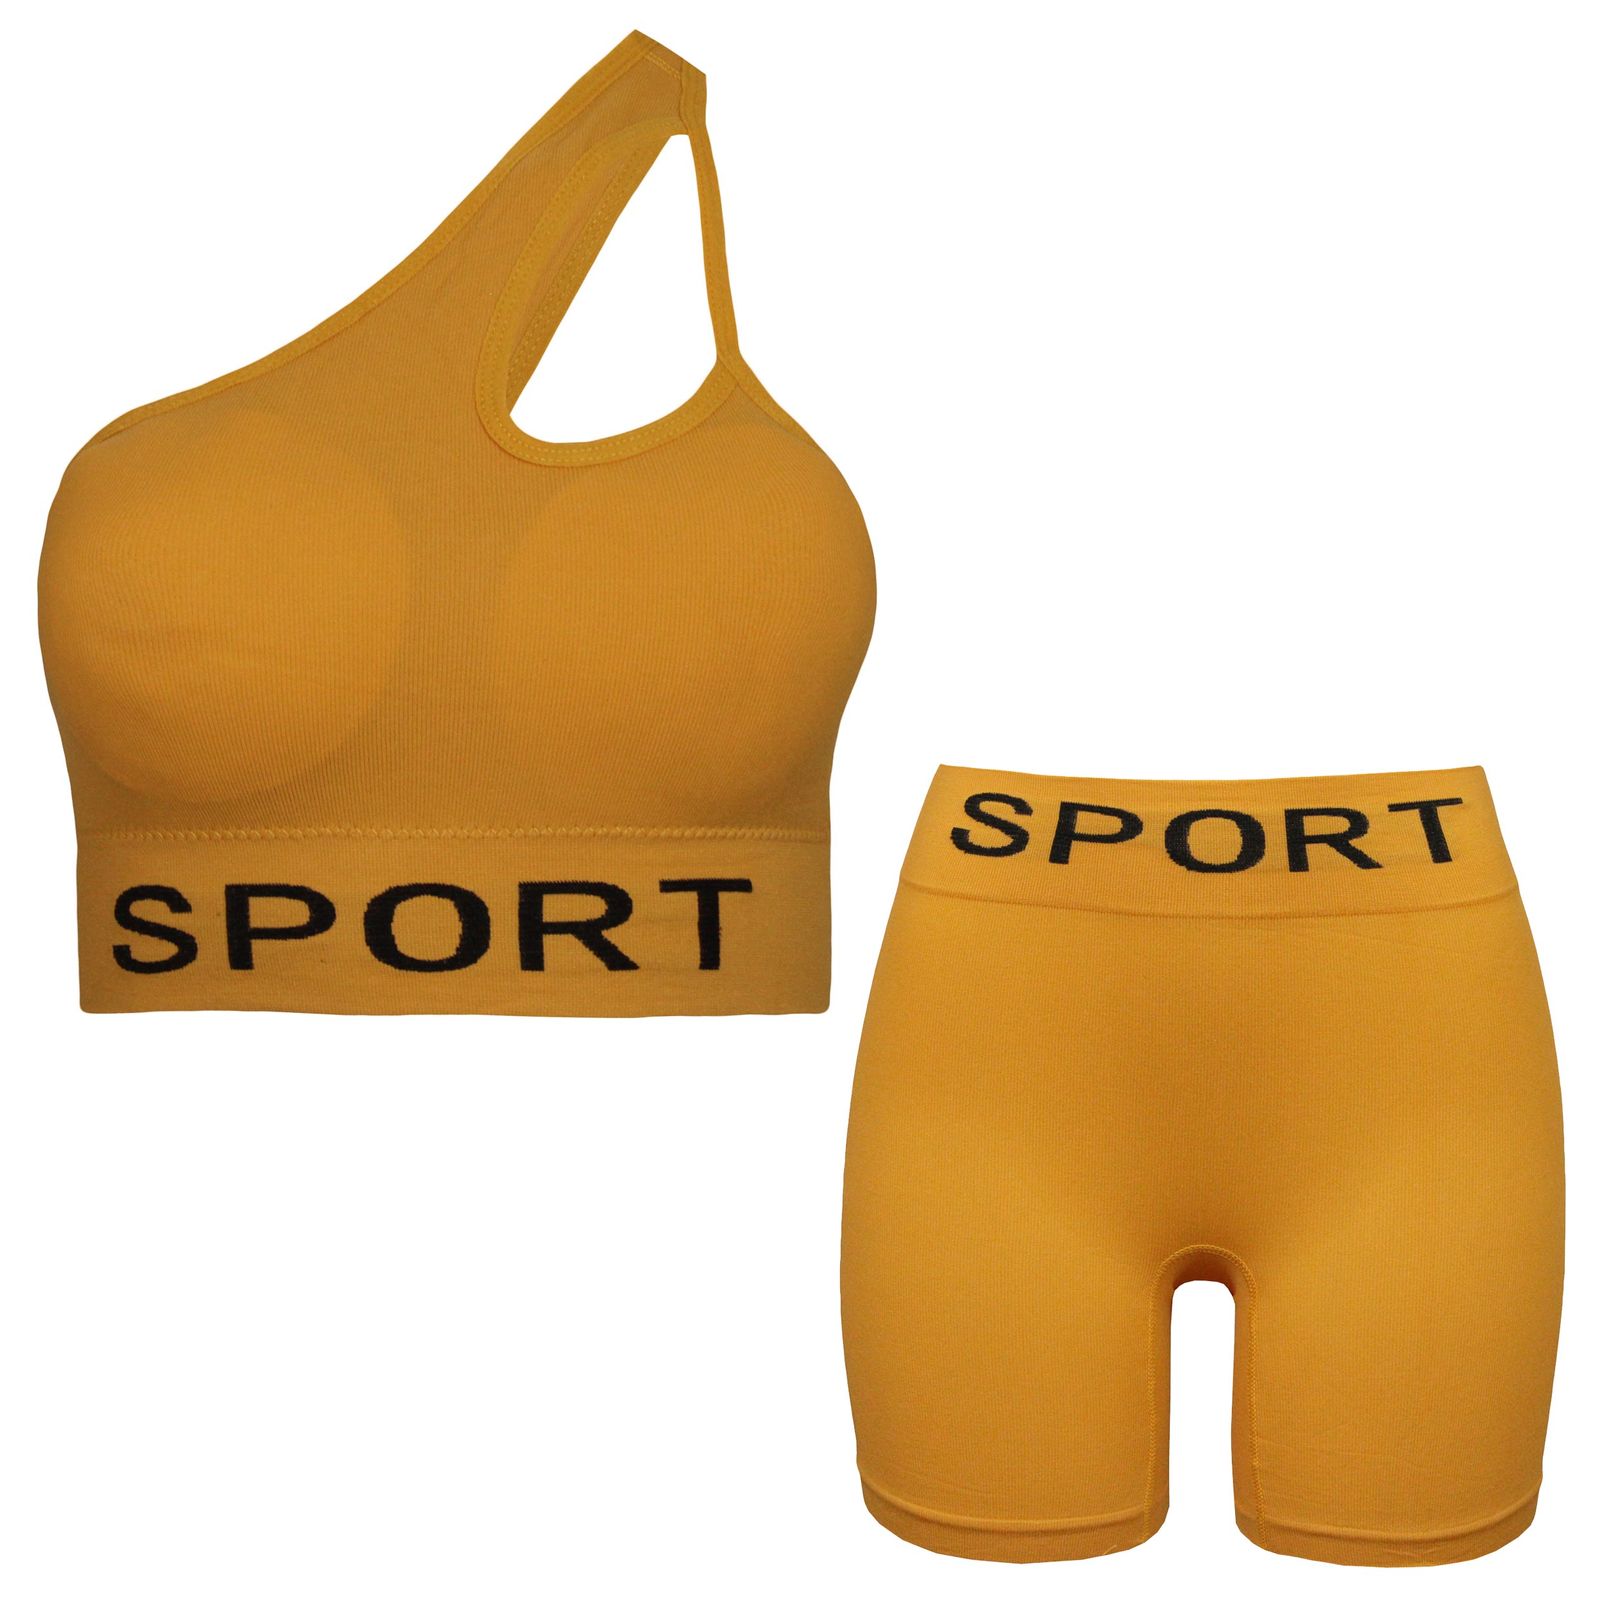 ست نیم تنه و شلوارک ورزشی زنانه ماییلدا مدل 4465 رنگ خردلی -  - 1